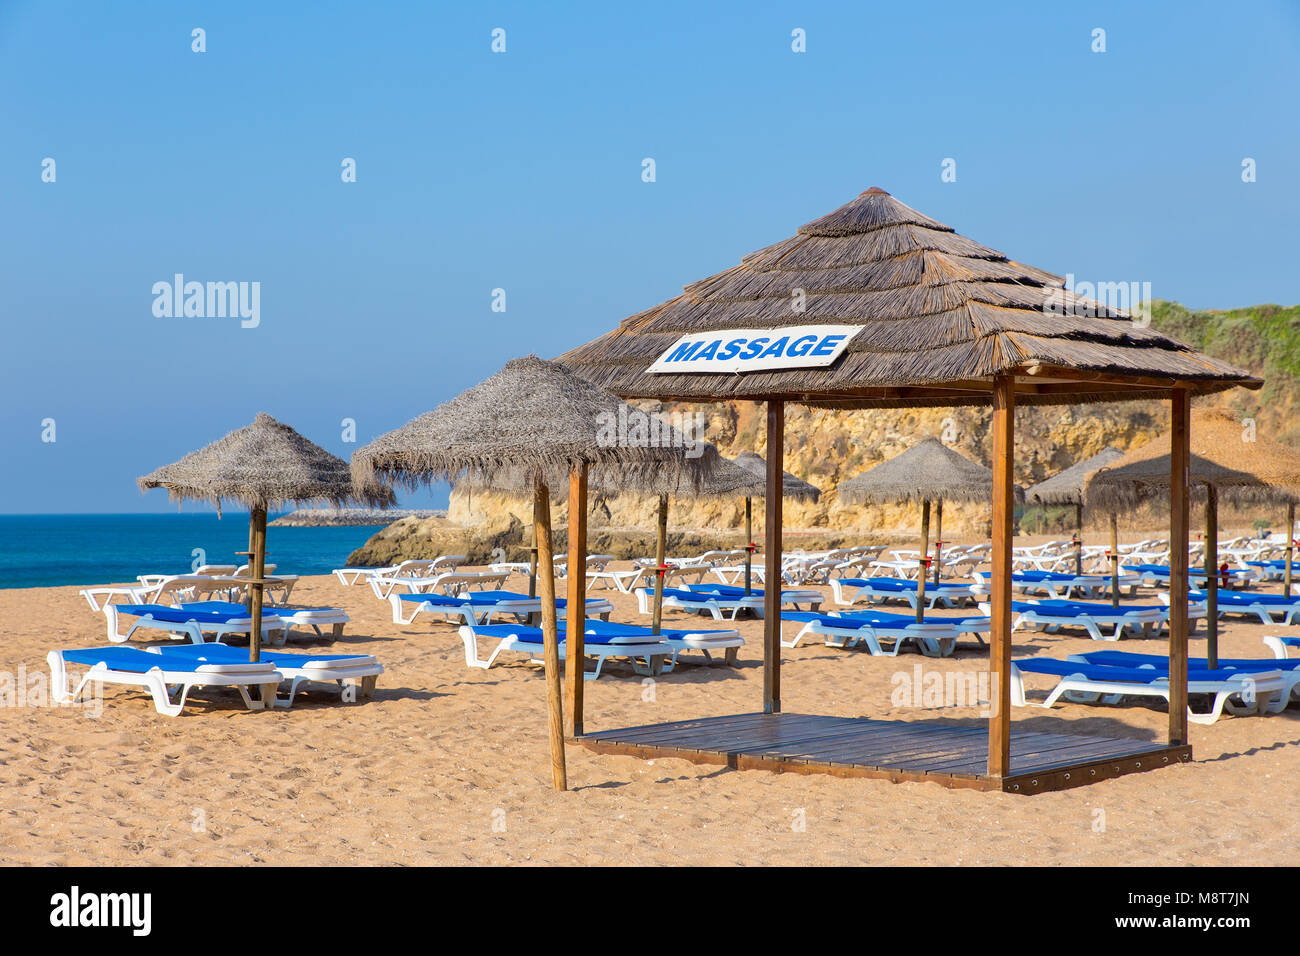 Des parasols de plage en osier bleu et des lits de plage en mer Banque D'Images